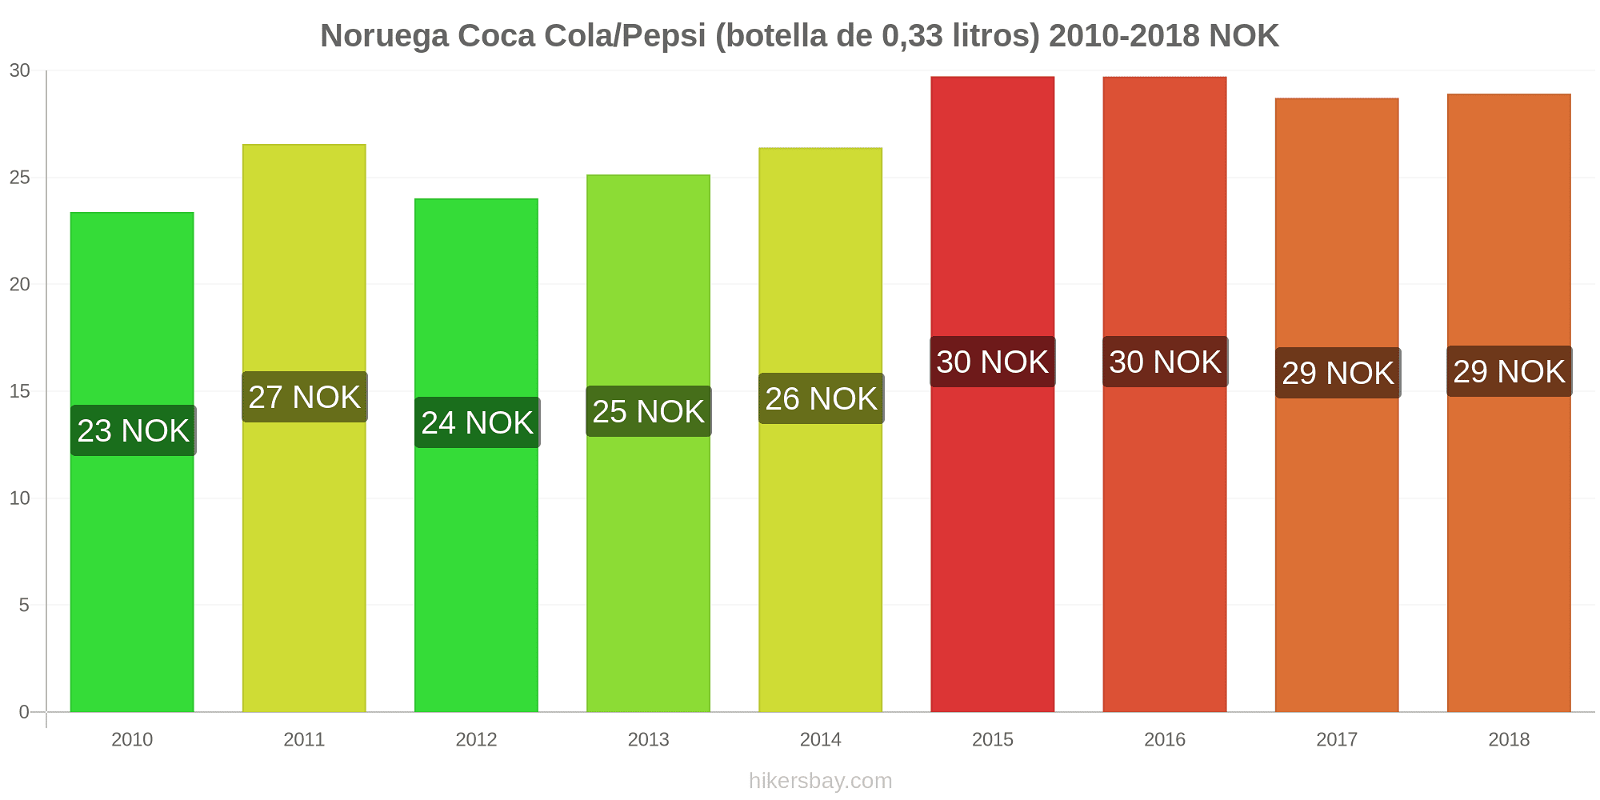 Noruega cambios de precios Coca-Cola/Pepsi (botella de 0.33 litros) hikersbay.com